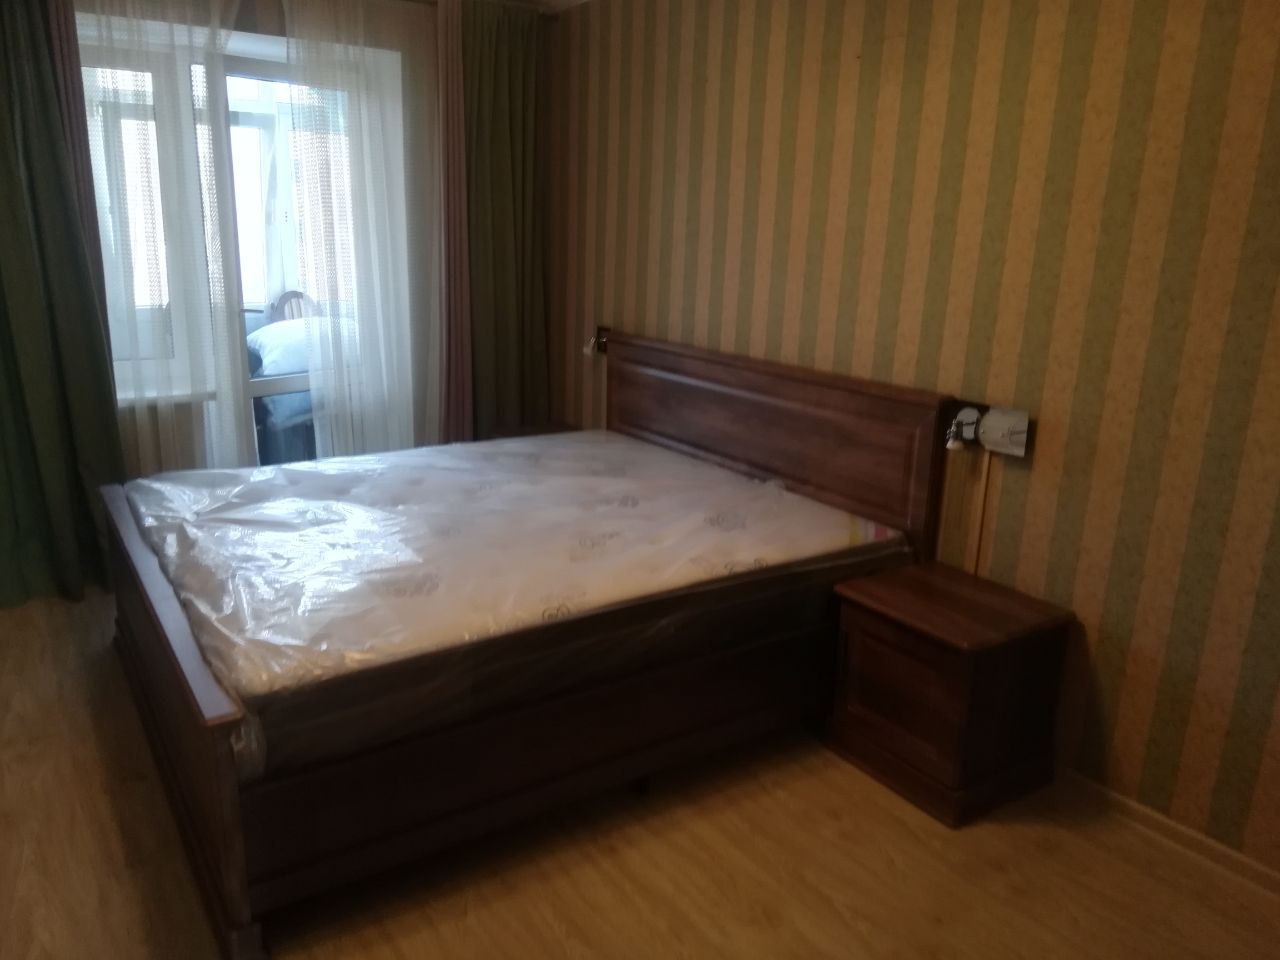 Двуспальная кровать "Прованс " 160 х 190 с подъемным мех-ом цвет дуб коньяк изножье низкое